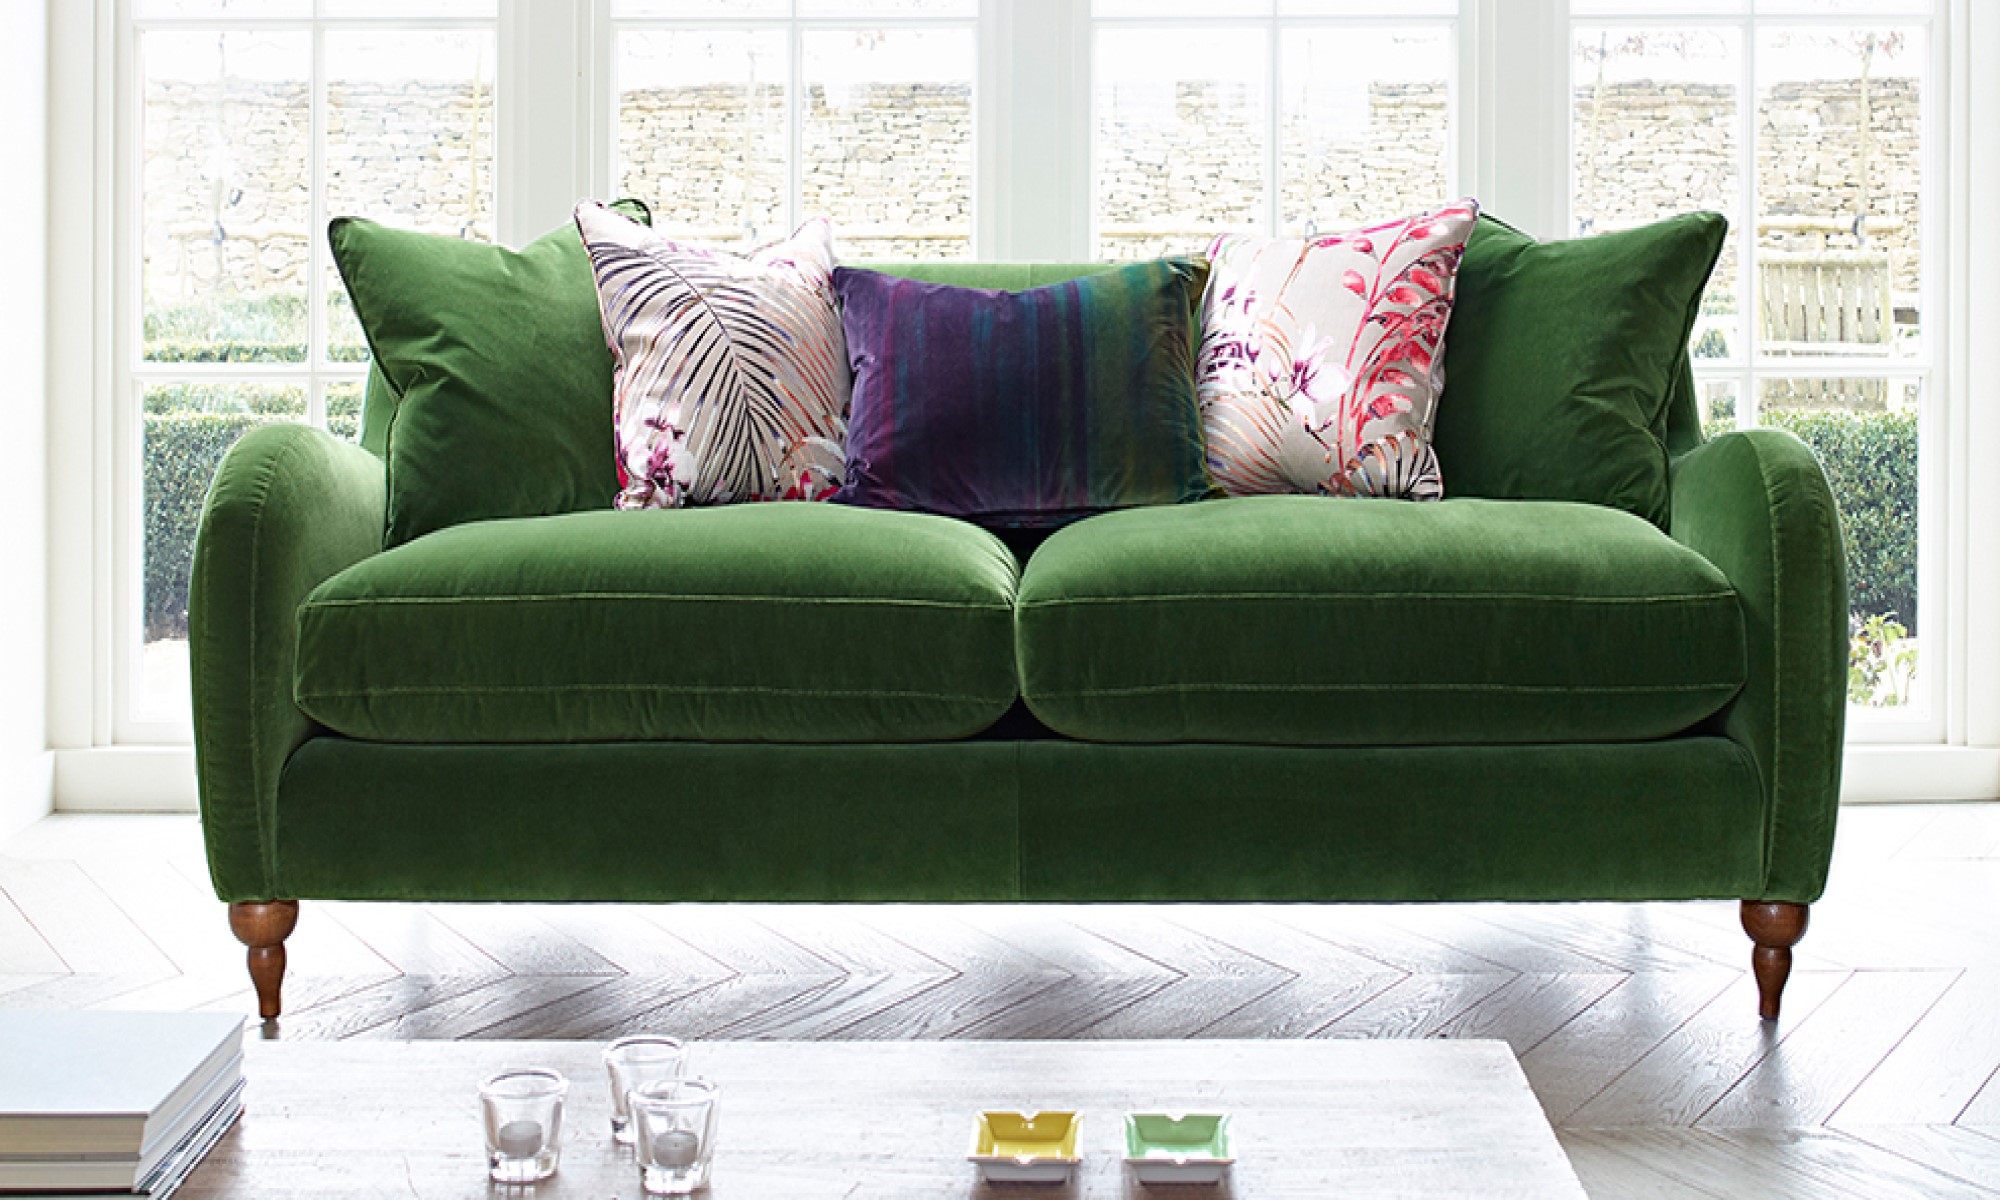 Игра цветов в интерьере: освежитесь с зеленым диваном